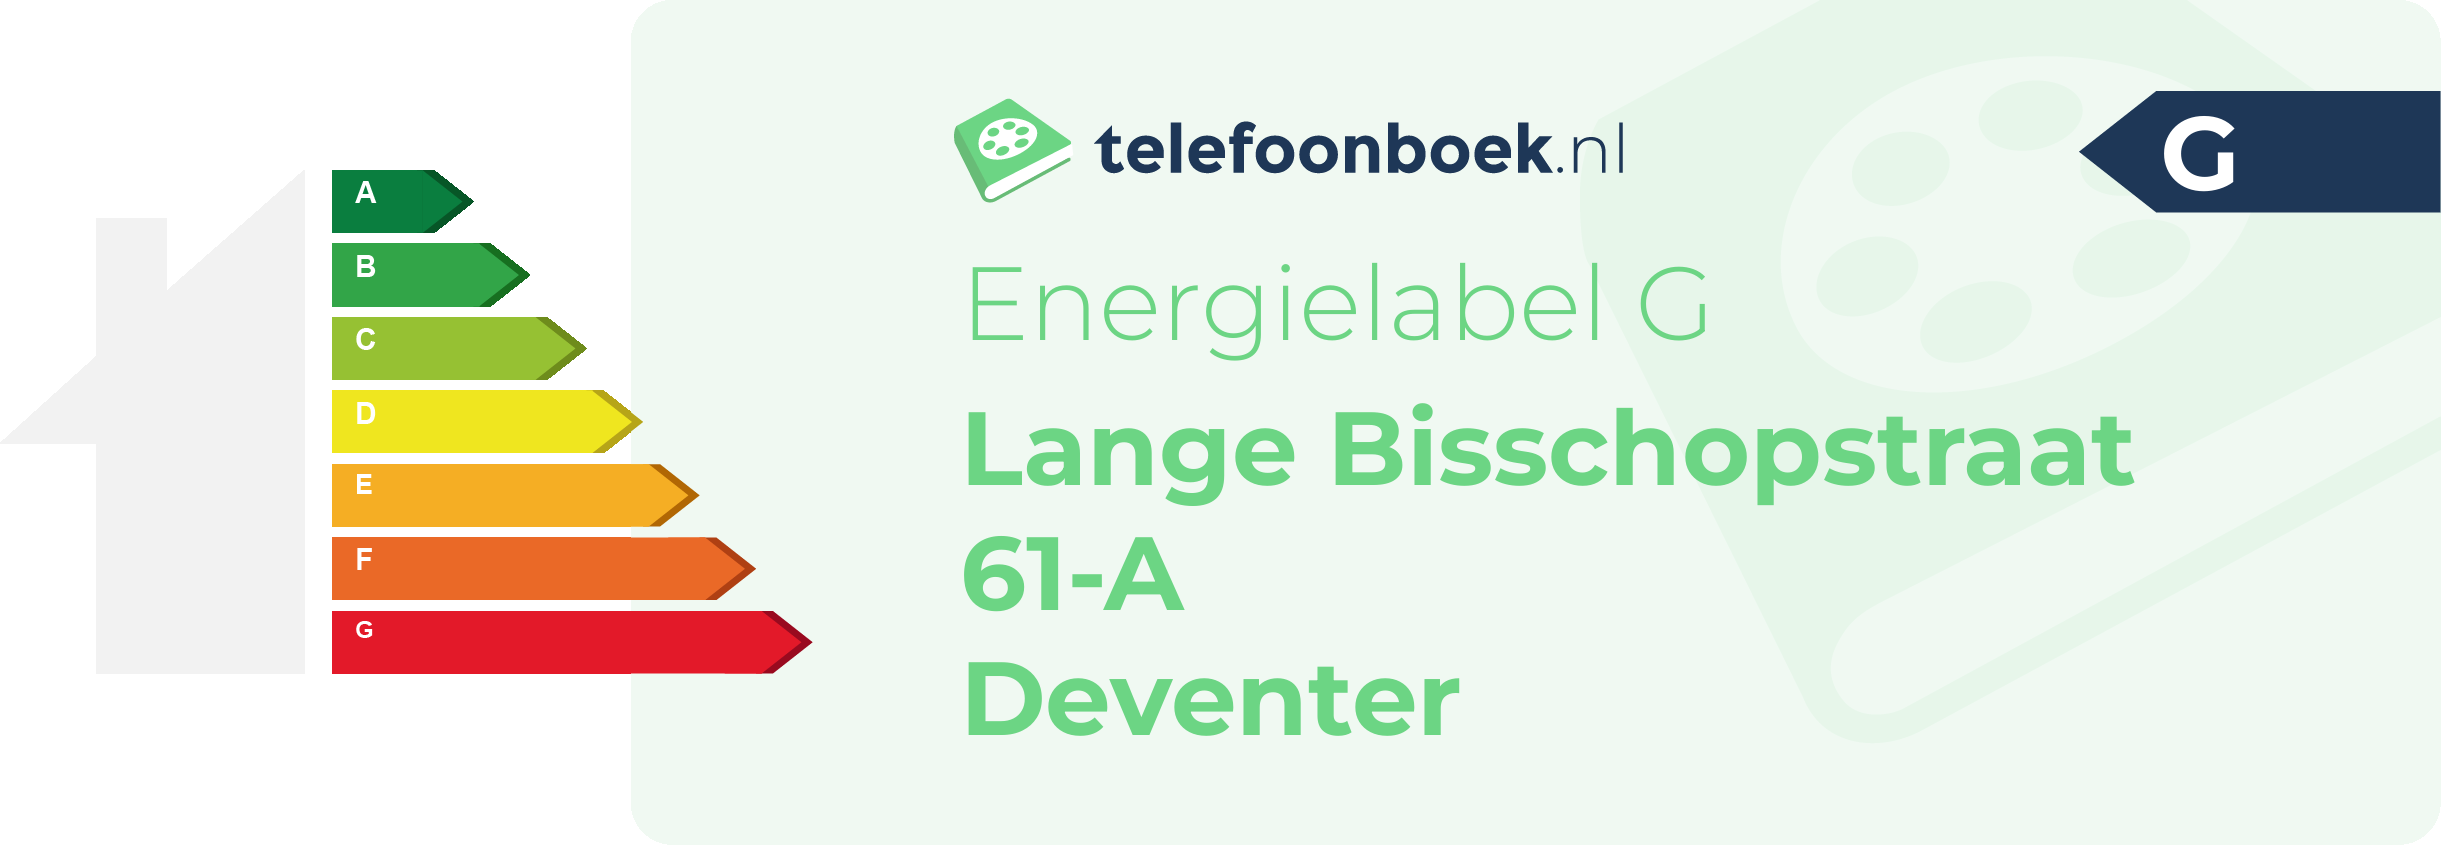 Energielabel Lange Bisschopstraat 61-A Deventer